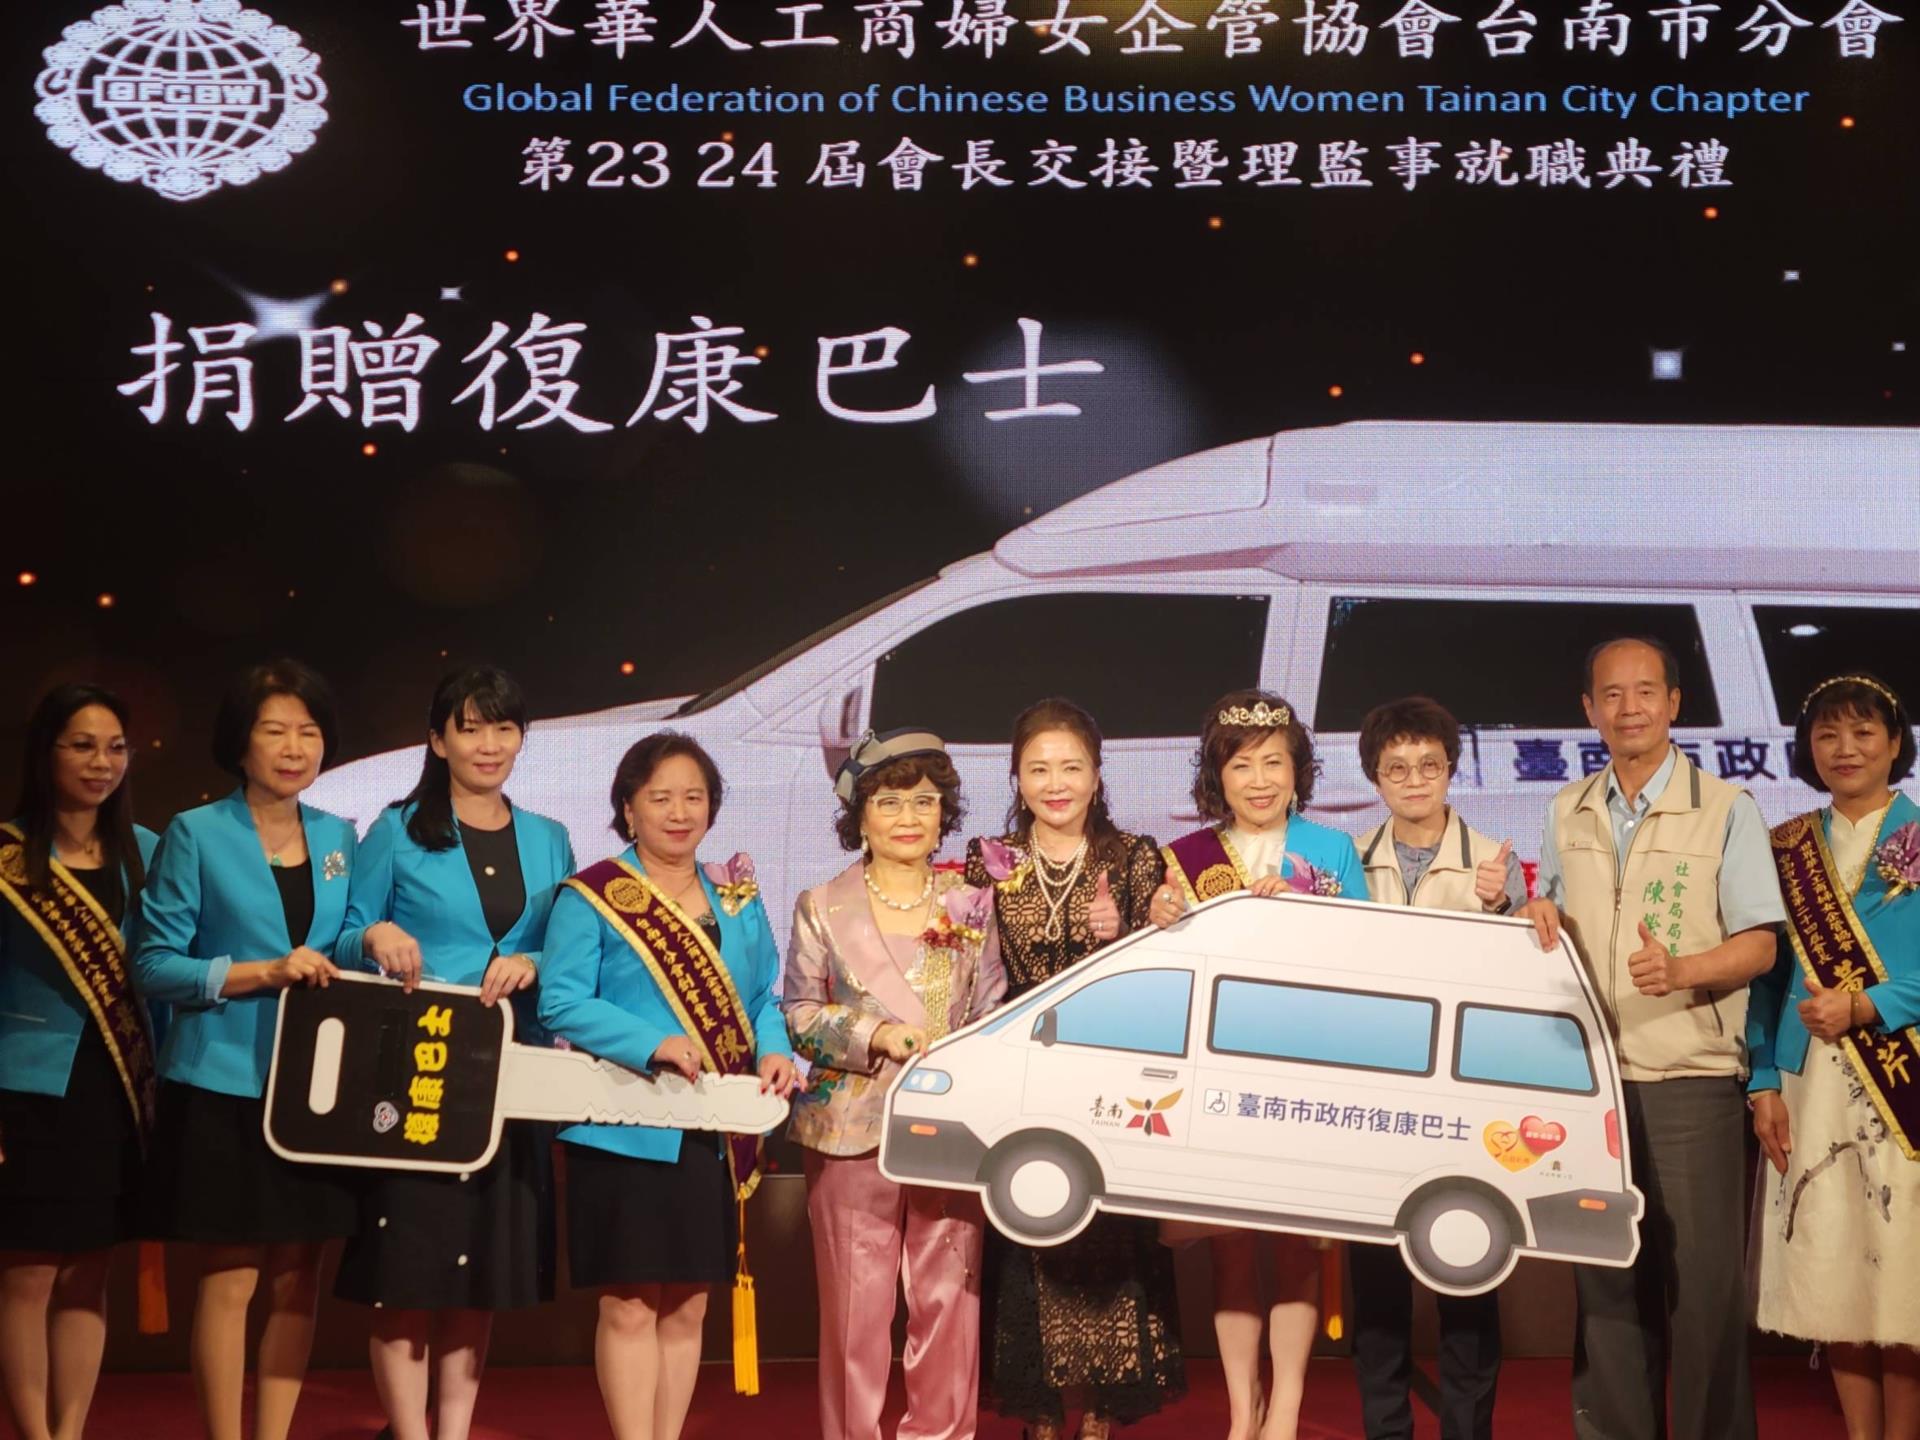 黃偉哲感謝世界華人工商婦女企管協會捐贈復康巴士 公私協力照顧身障者